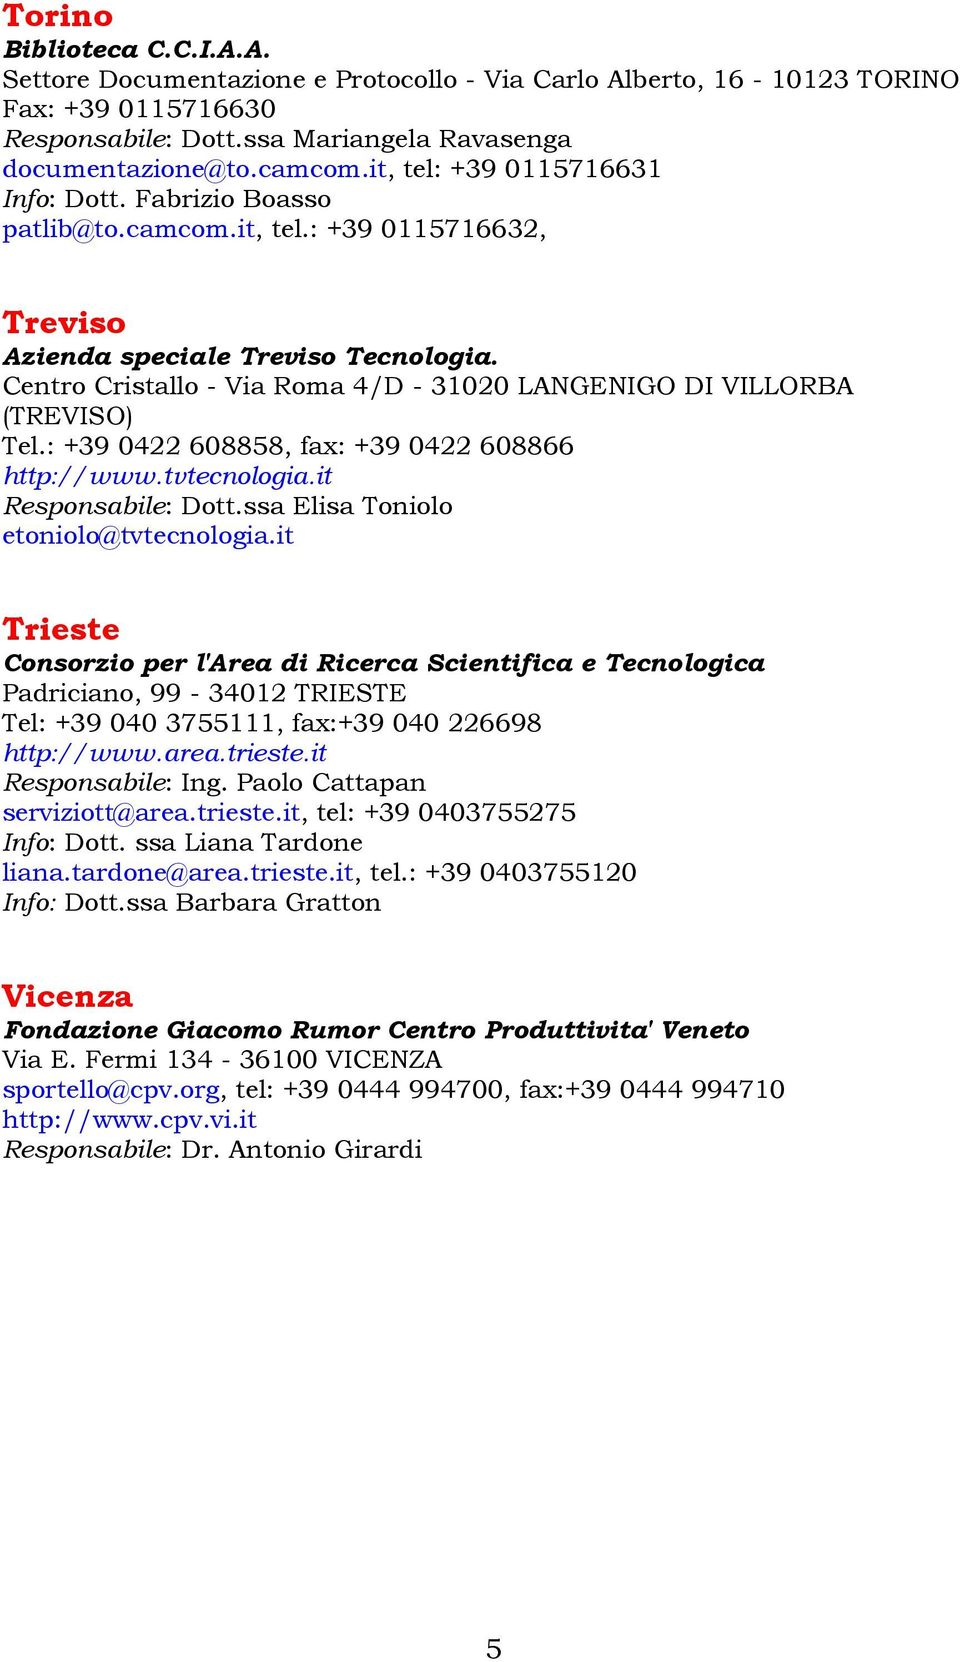 Centro Cristallo - Via Roma 4/D - 31020 LANGENIGO DI VILLORBA (TREVISO) Tel.: +39 0422 608858, fax: +39 0422 608866 http://www.tvtecnologia.it Responsabile: Dott.